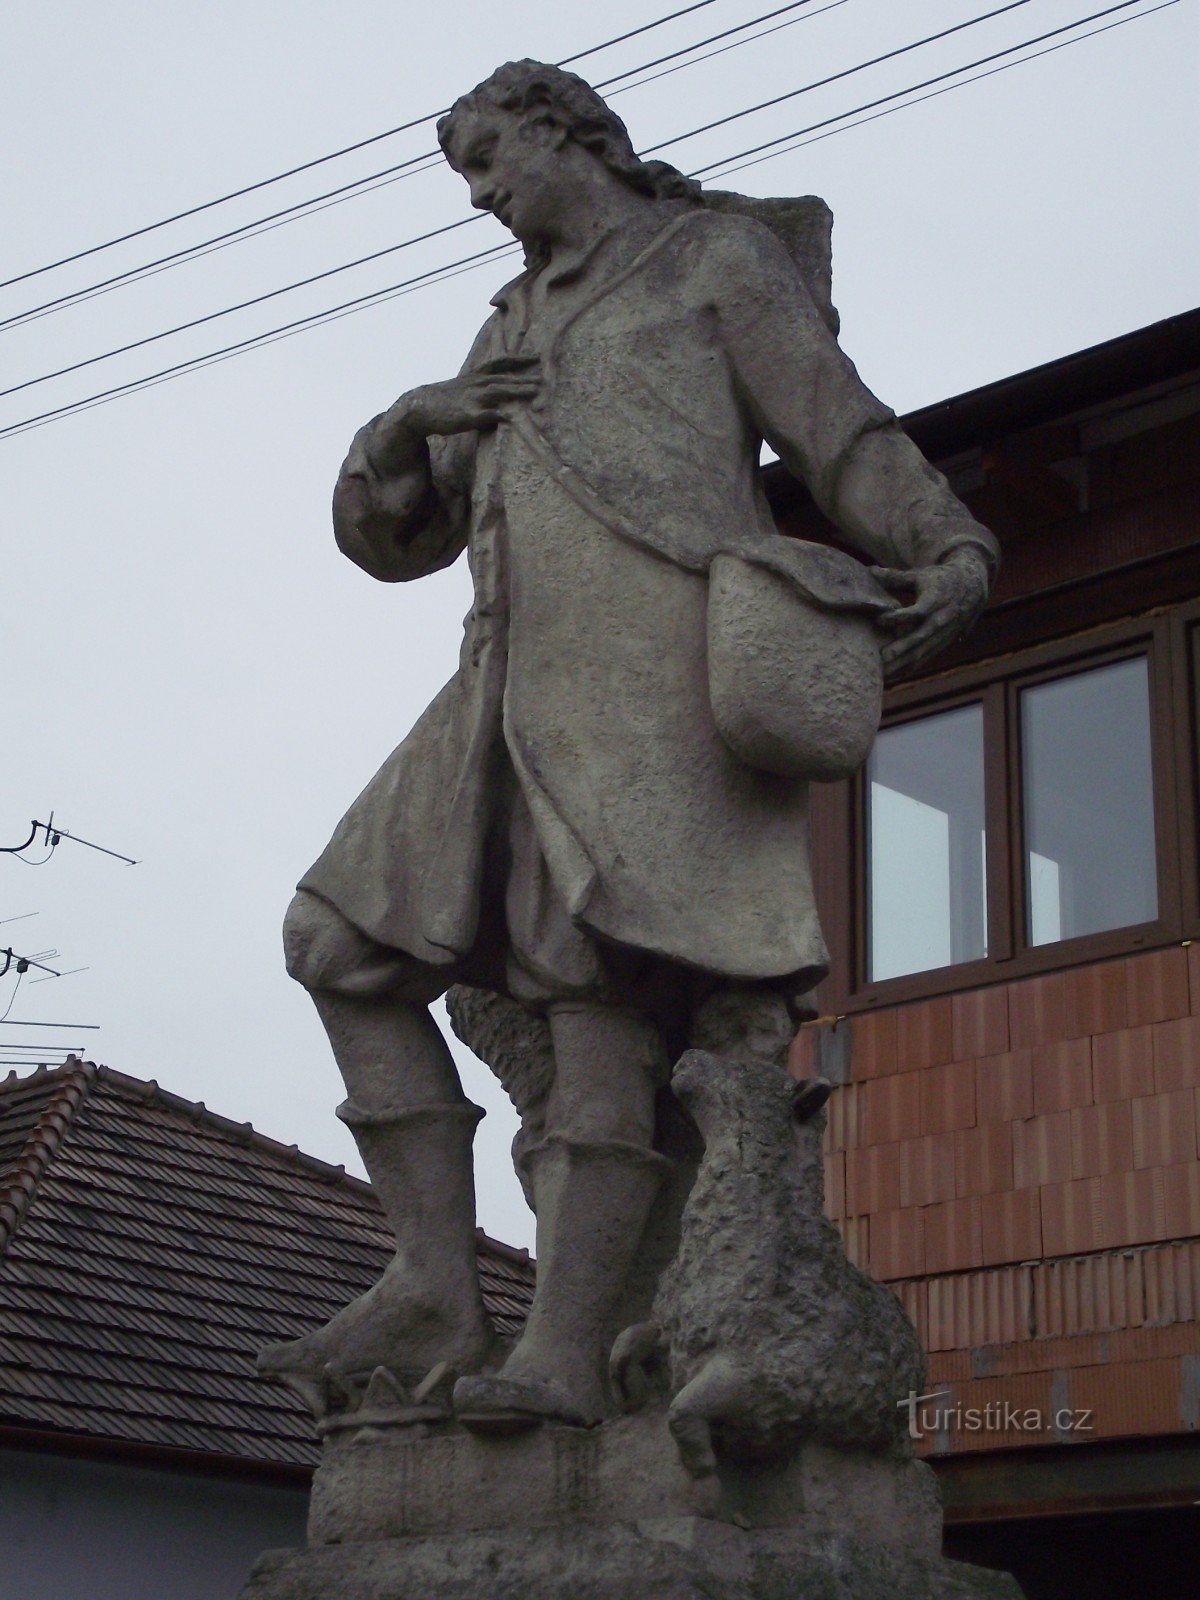 Velké Bílovice - statue of St. Wendelin